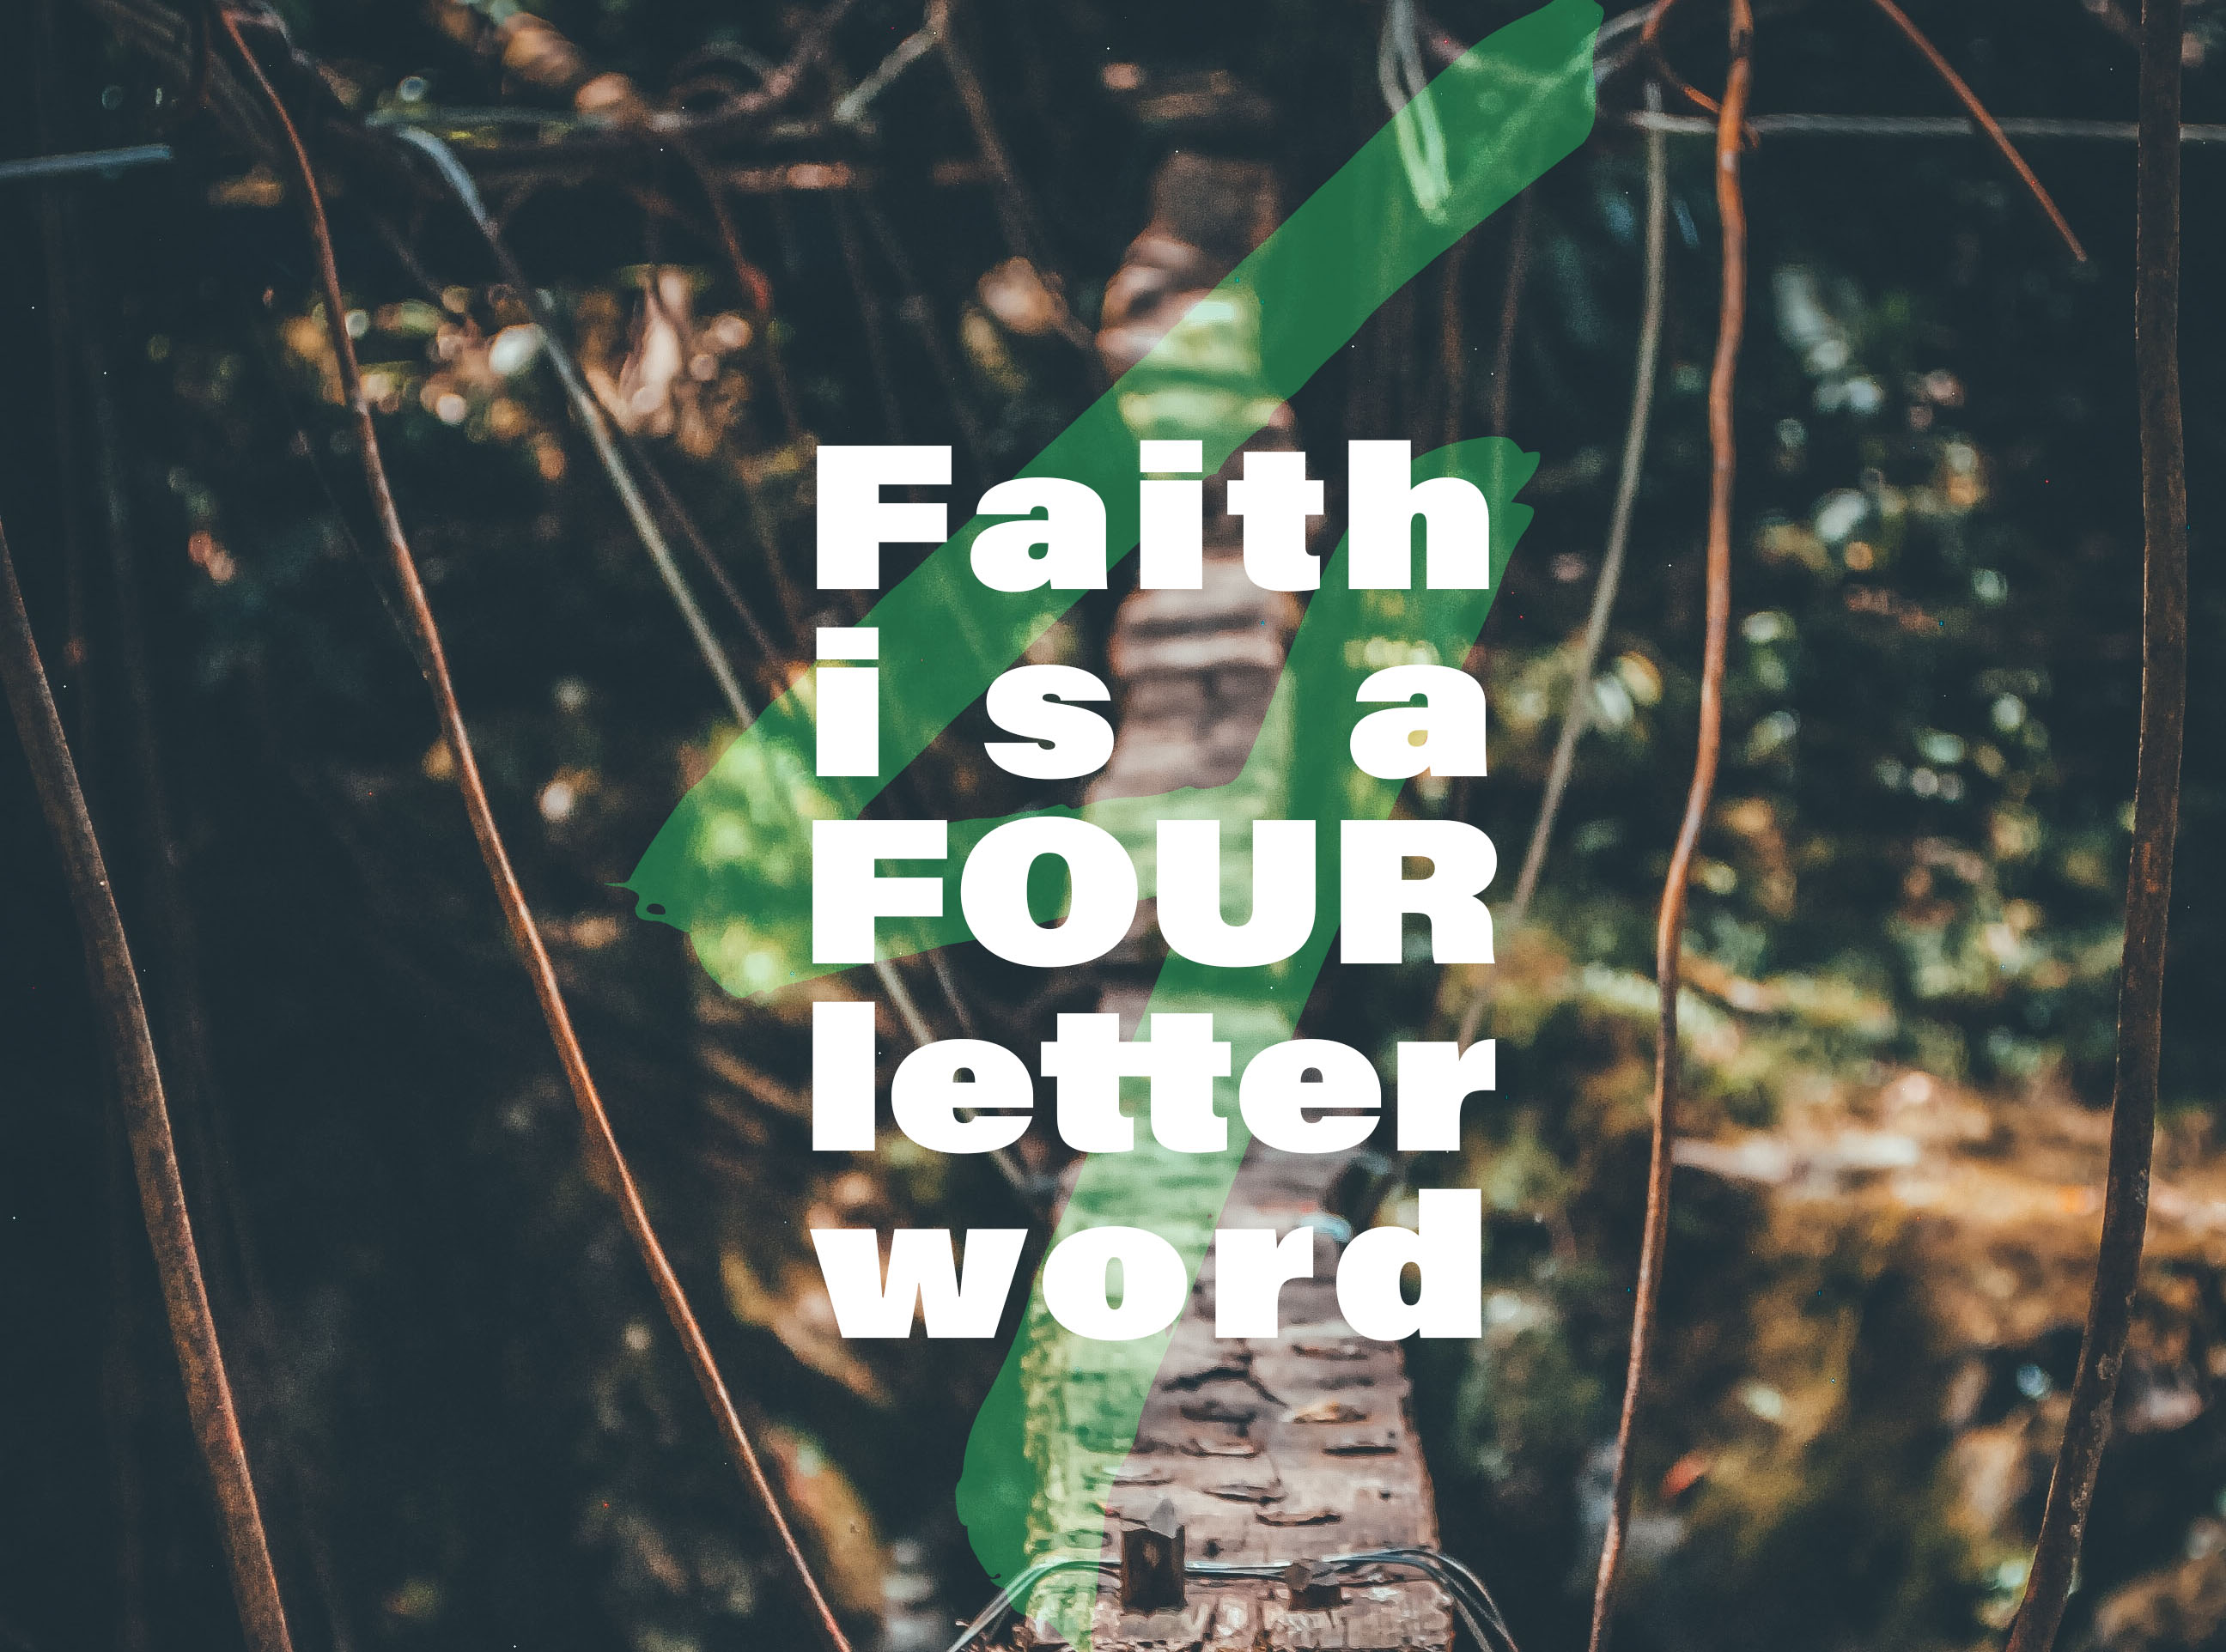 Faith is a 4 letter word